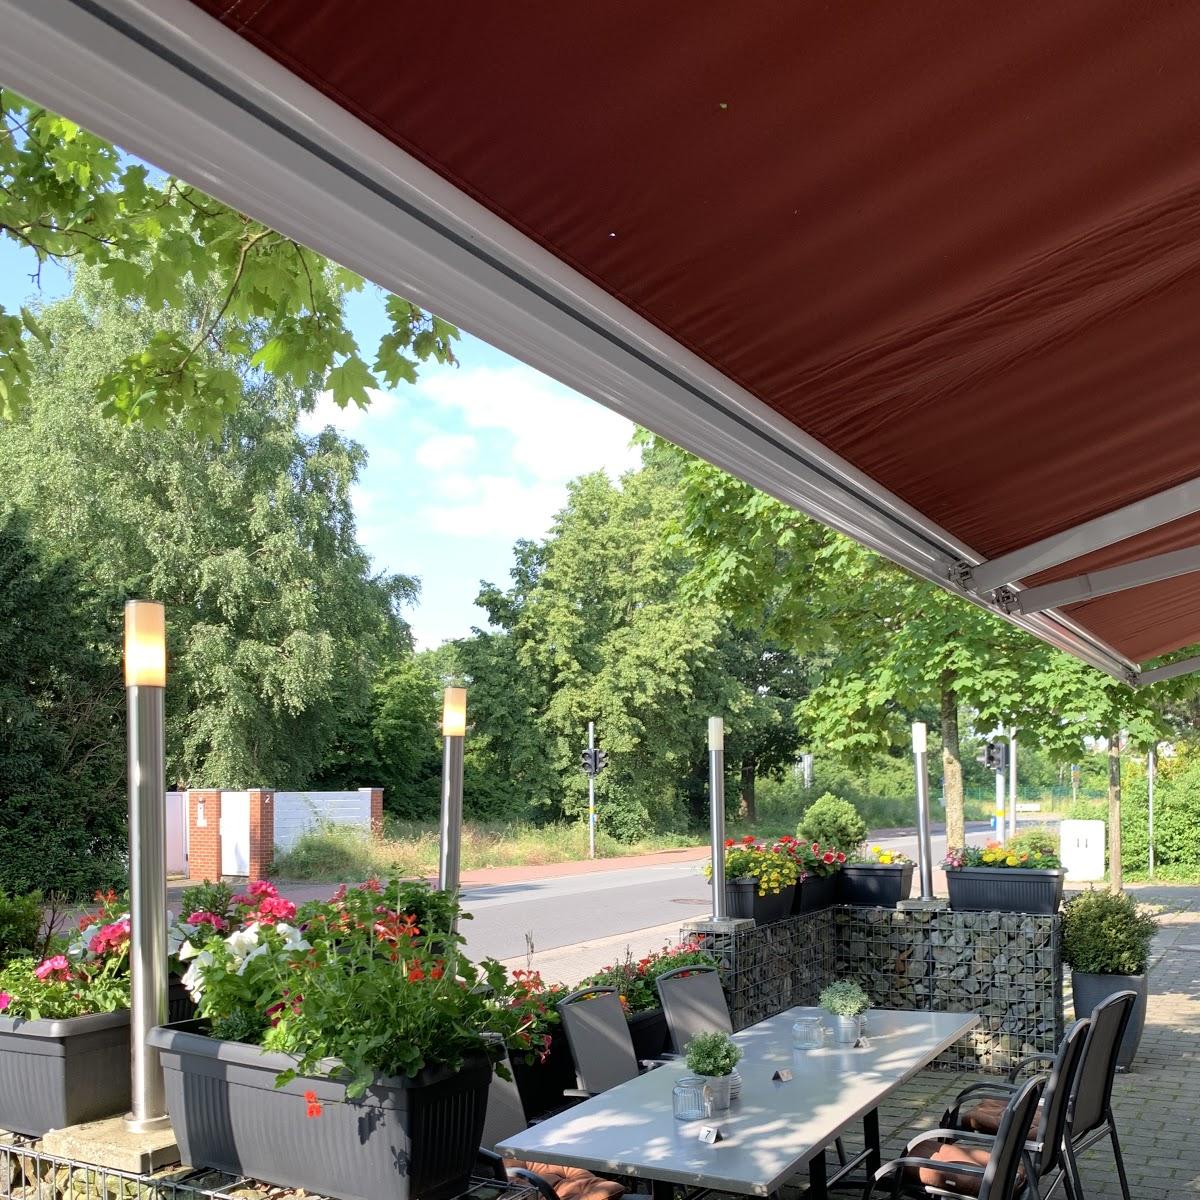 Restaurant "La Viola" in Wallenhorst